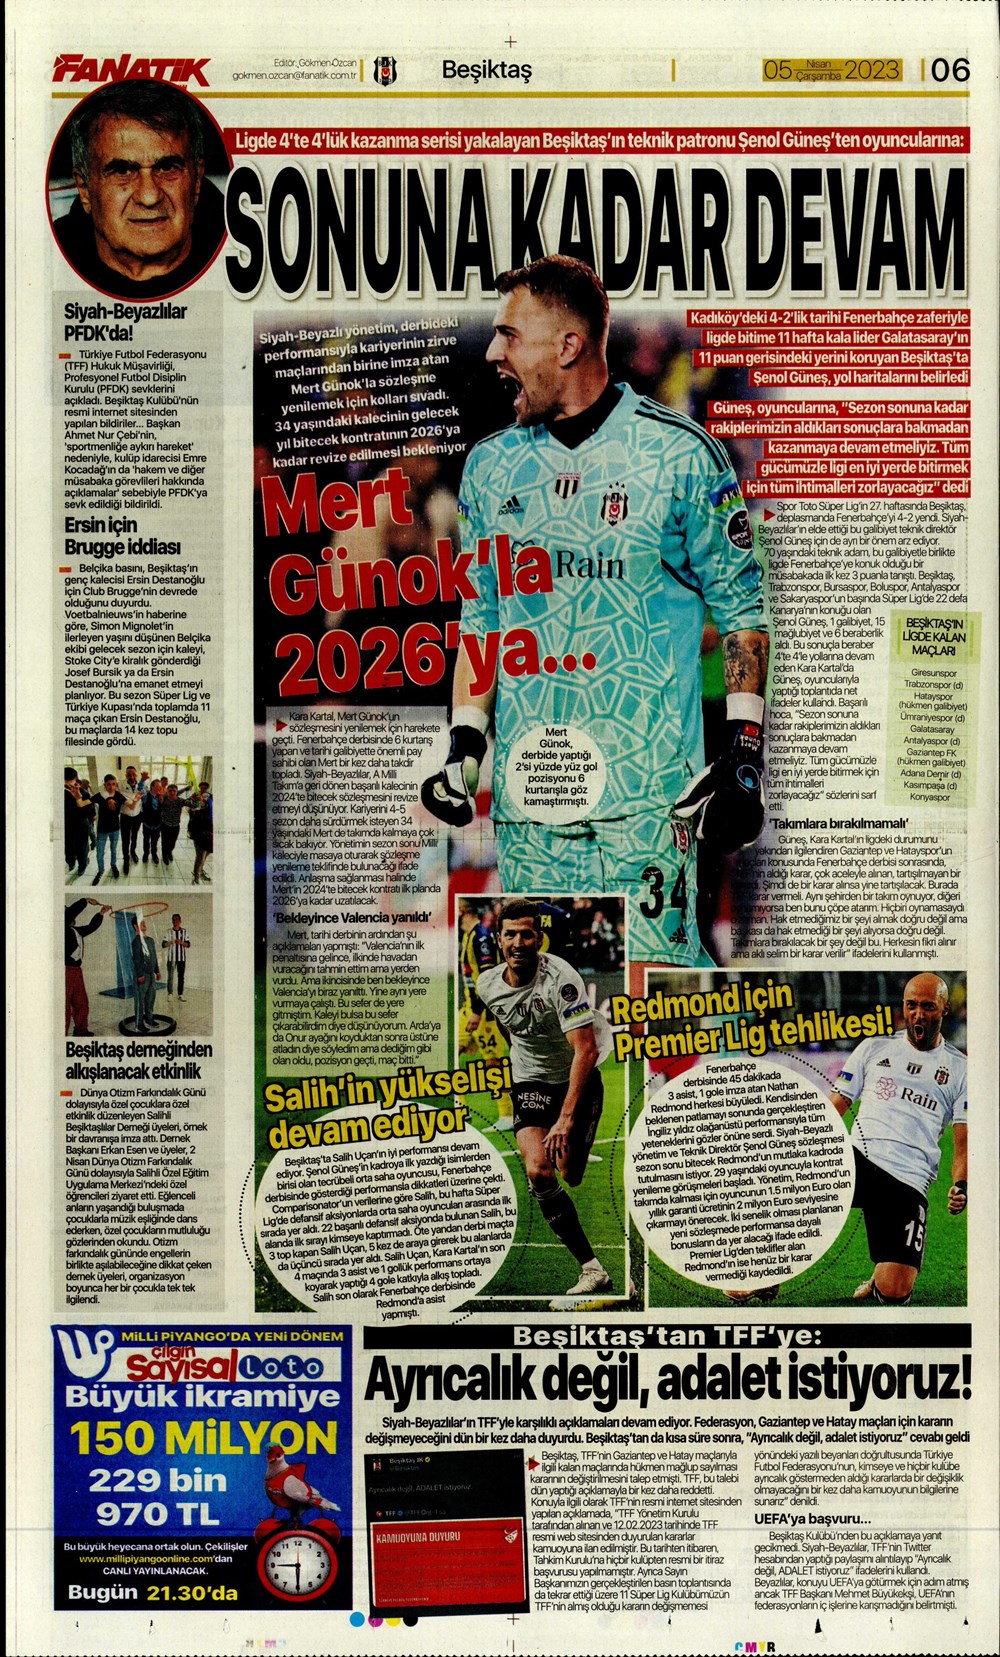 "Dünyada kimse buna penaltı demez" - Sporun manşetleri (5 Nisan 2023)  - 9. Foto